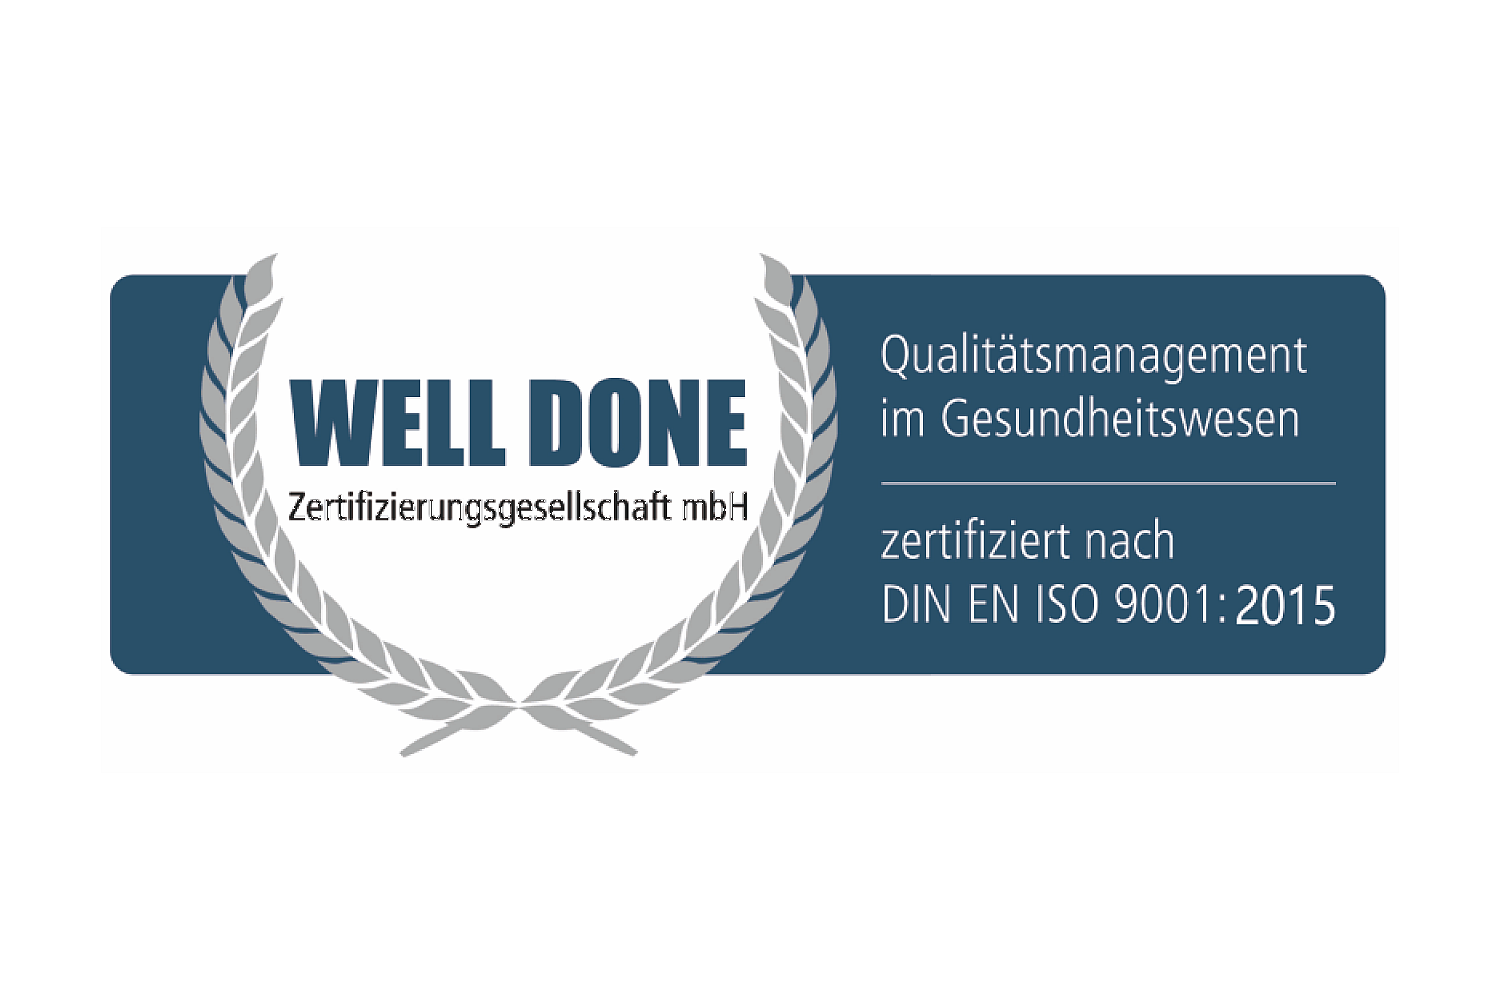 zertifizierung-dineniso9001-2015-welldone.png